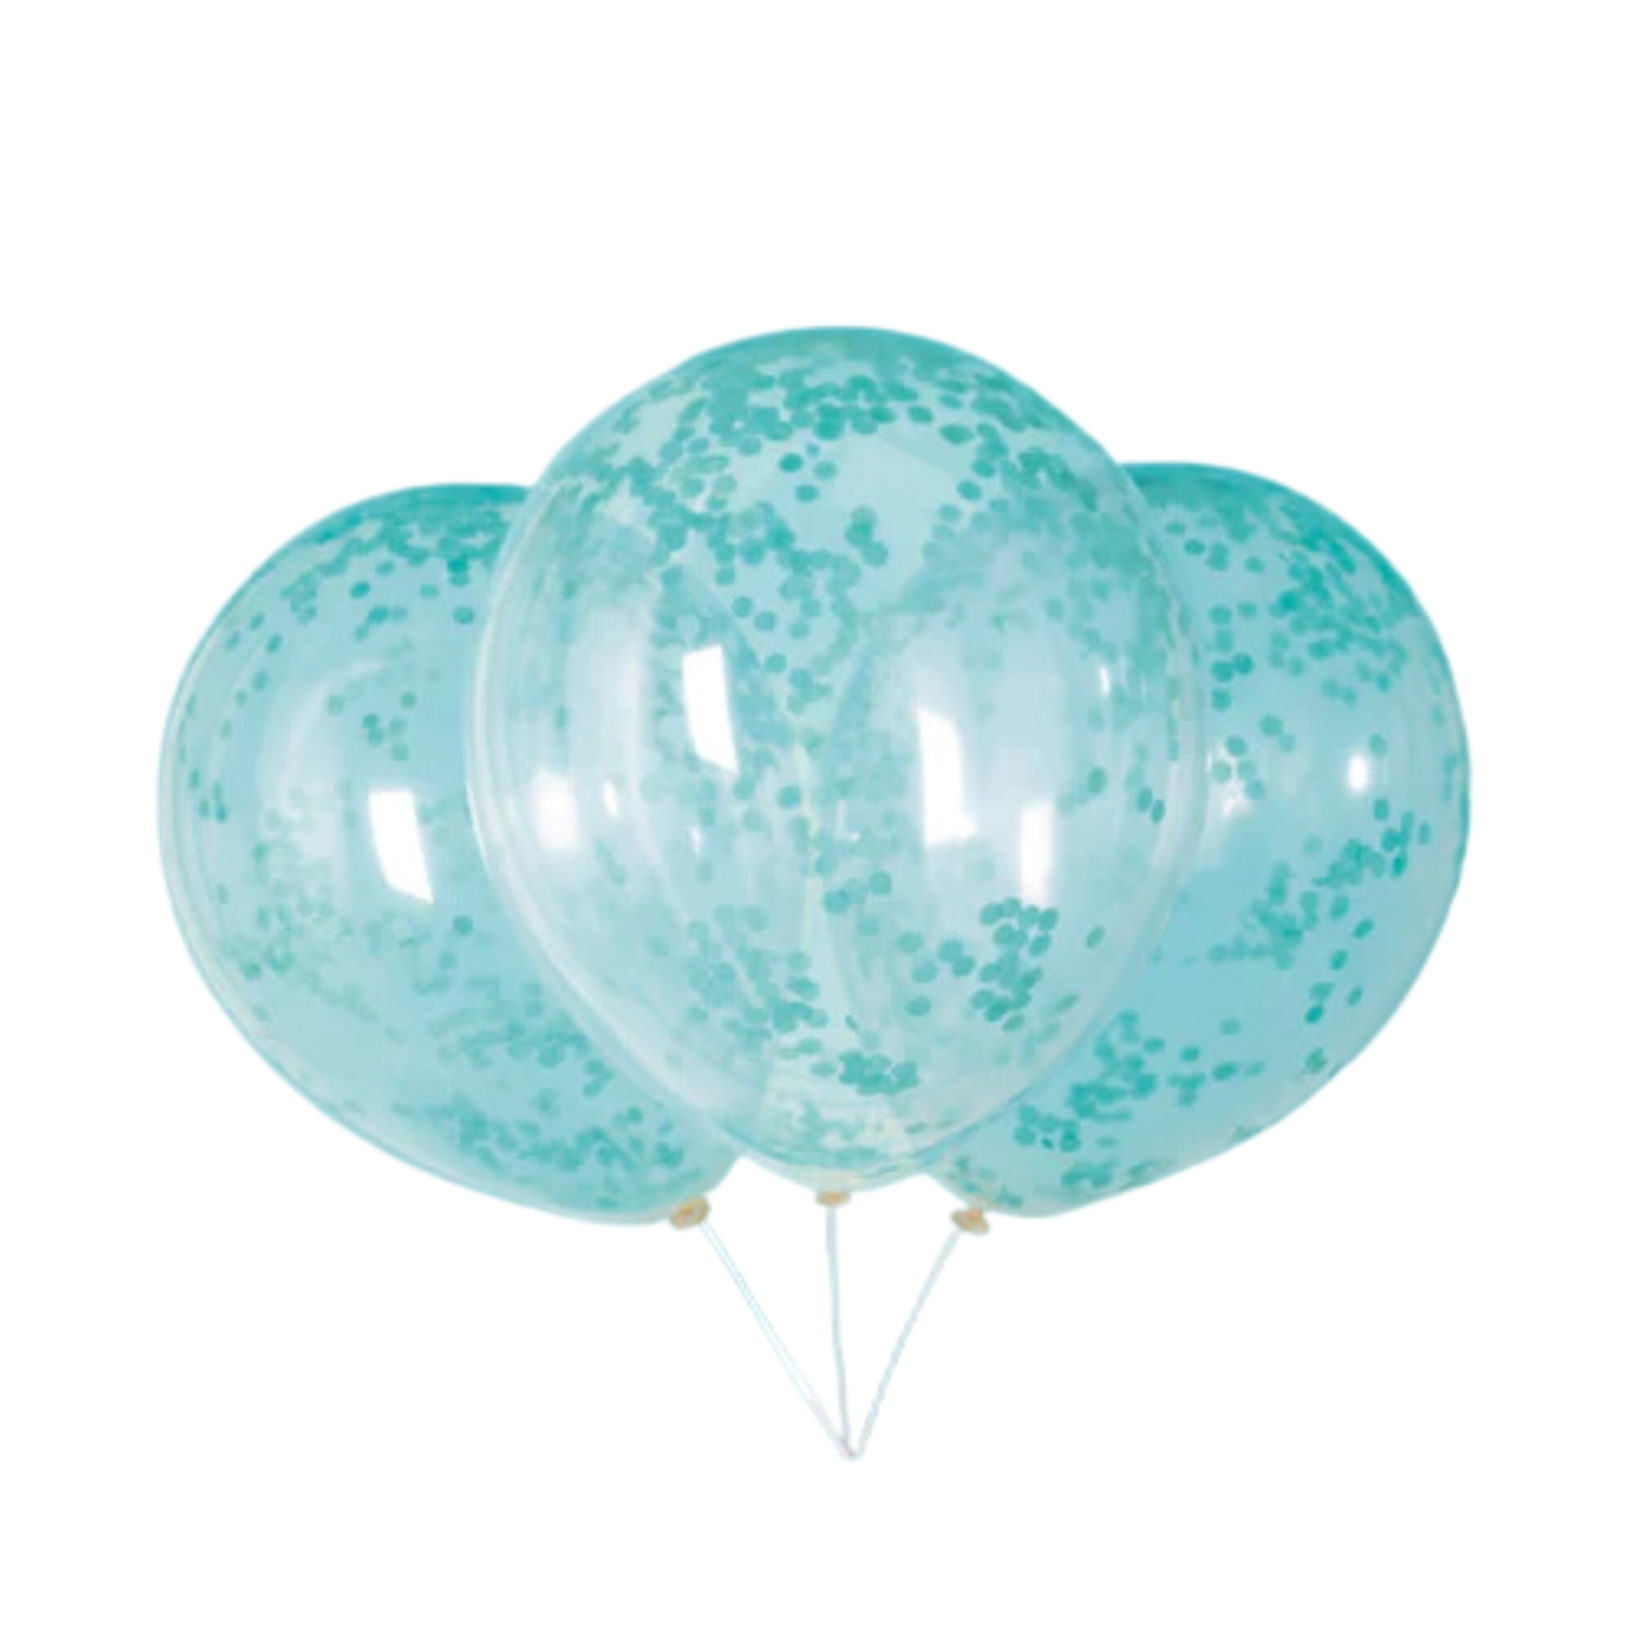 Teal Blue Confetti Balloon 6ct